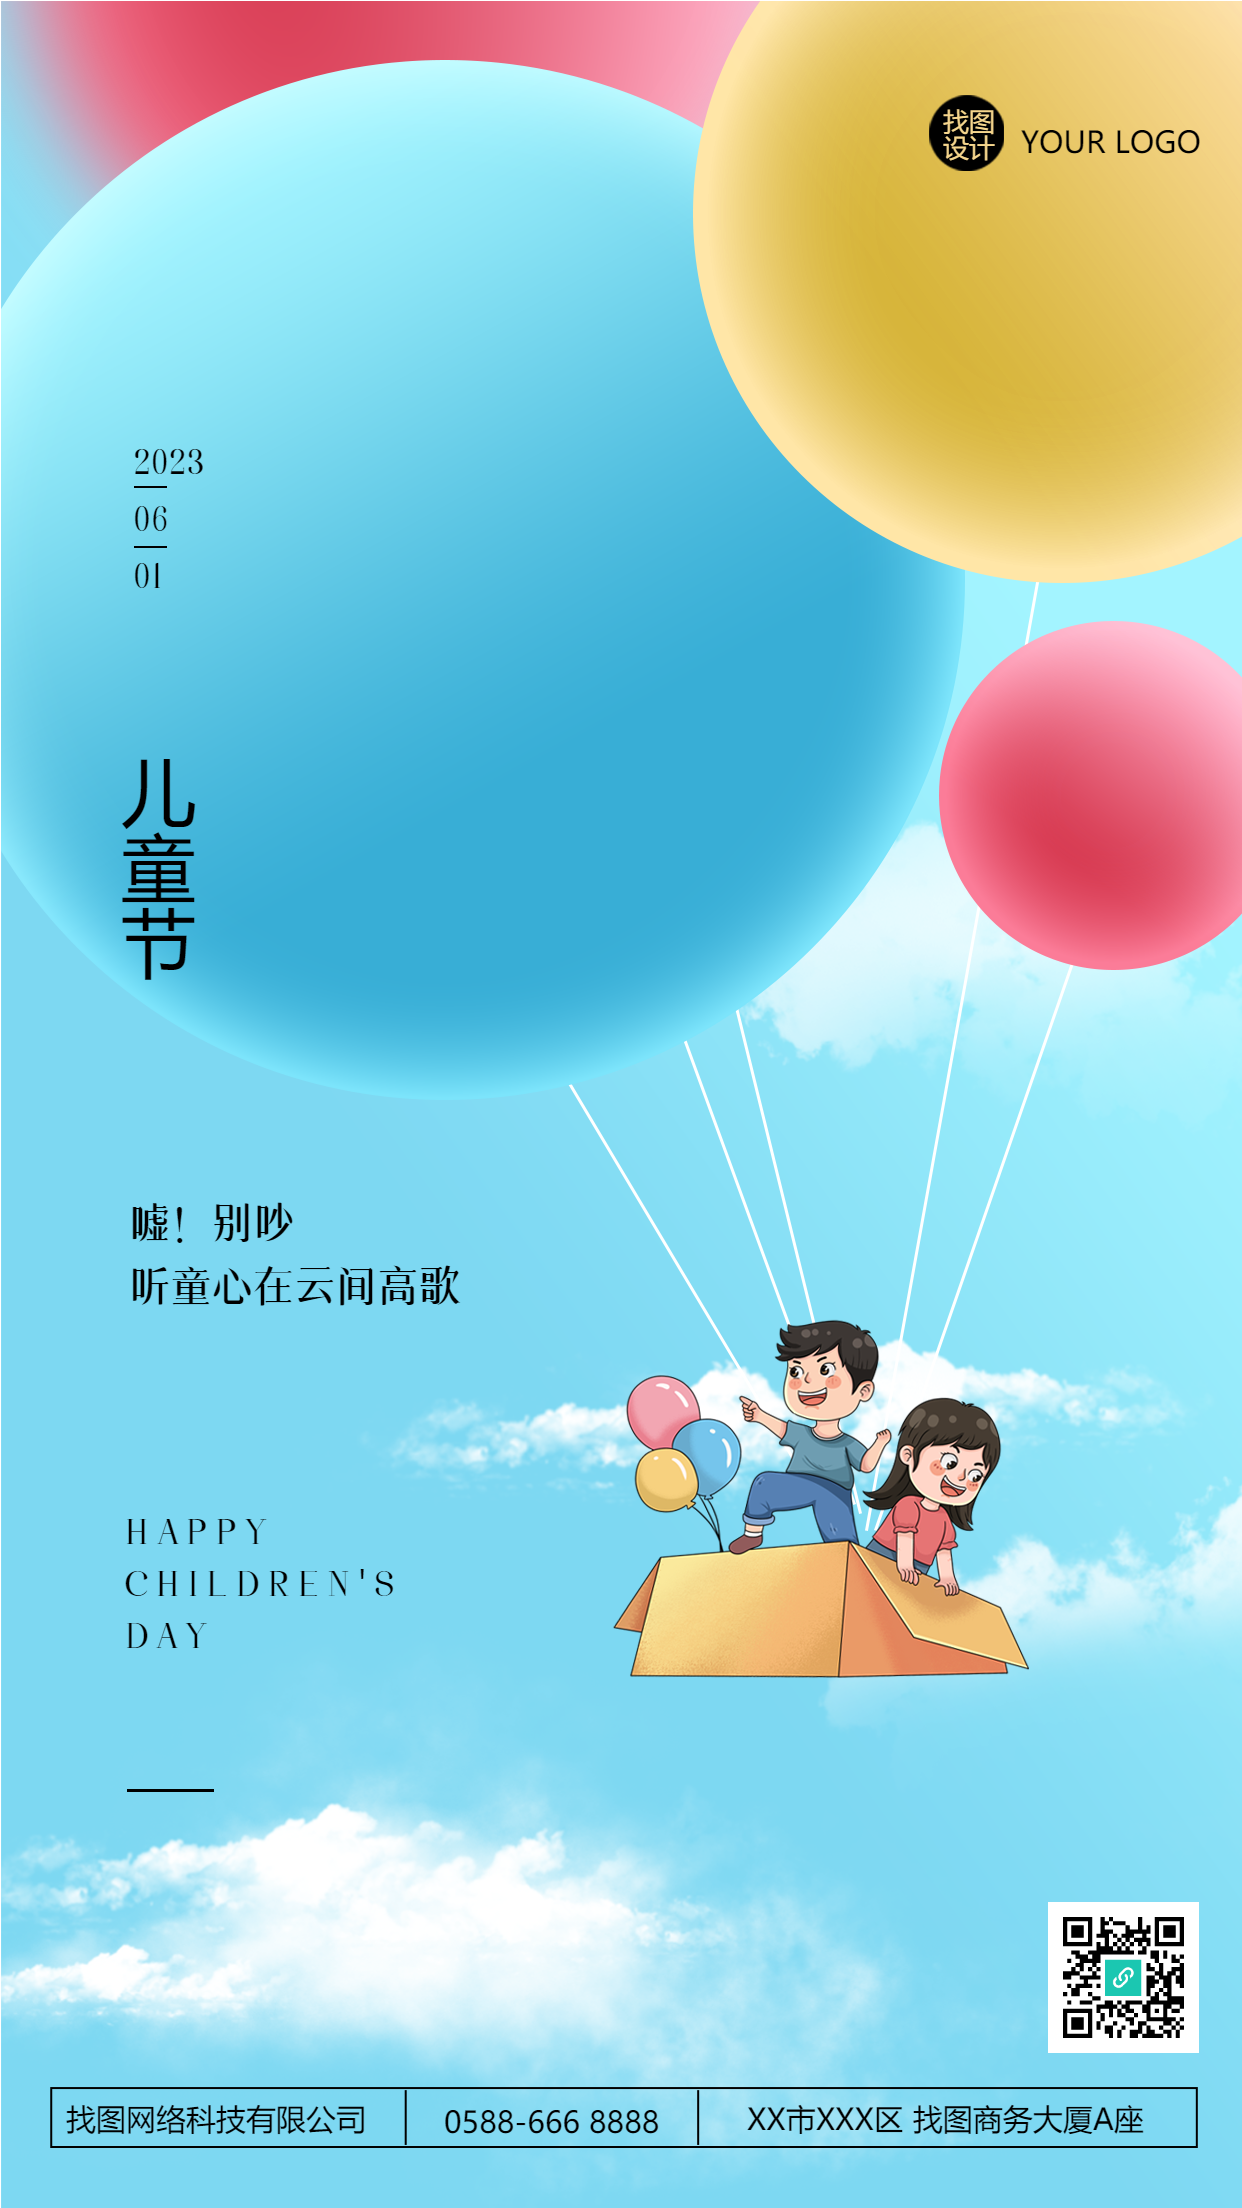 卡通彩色气球国际儿童节创意手机海报